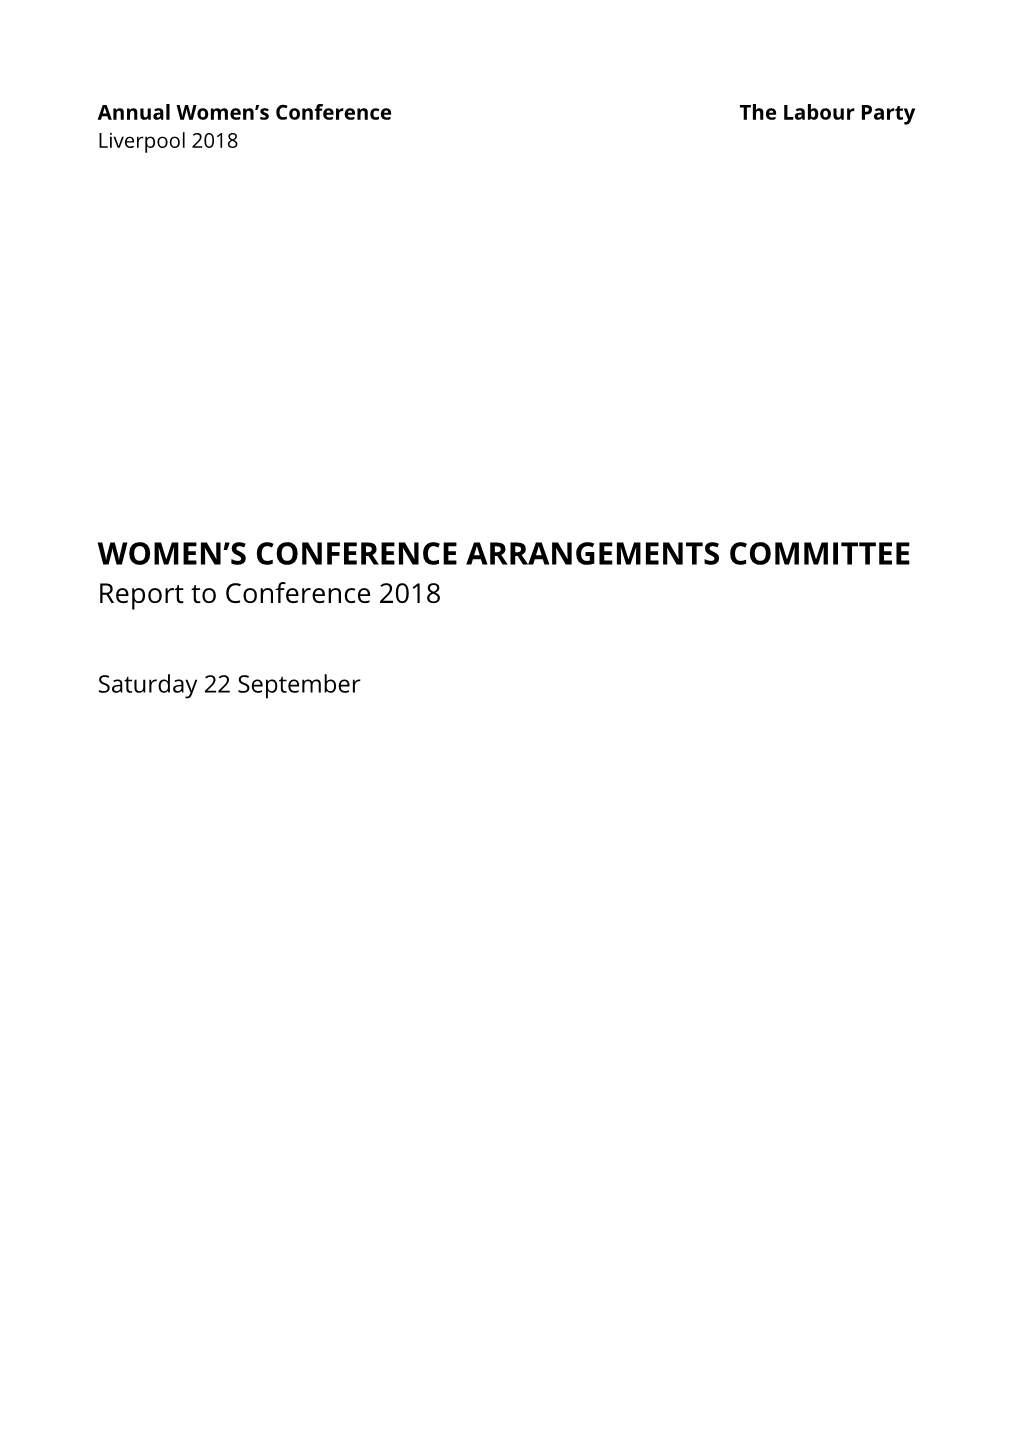 Women's Conference Arrangements Committee